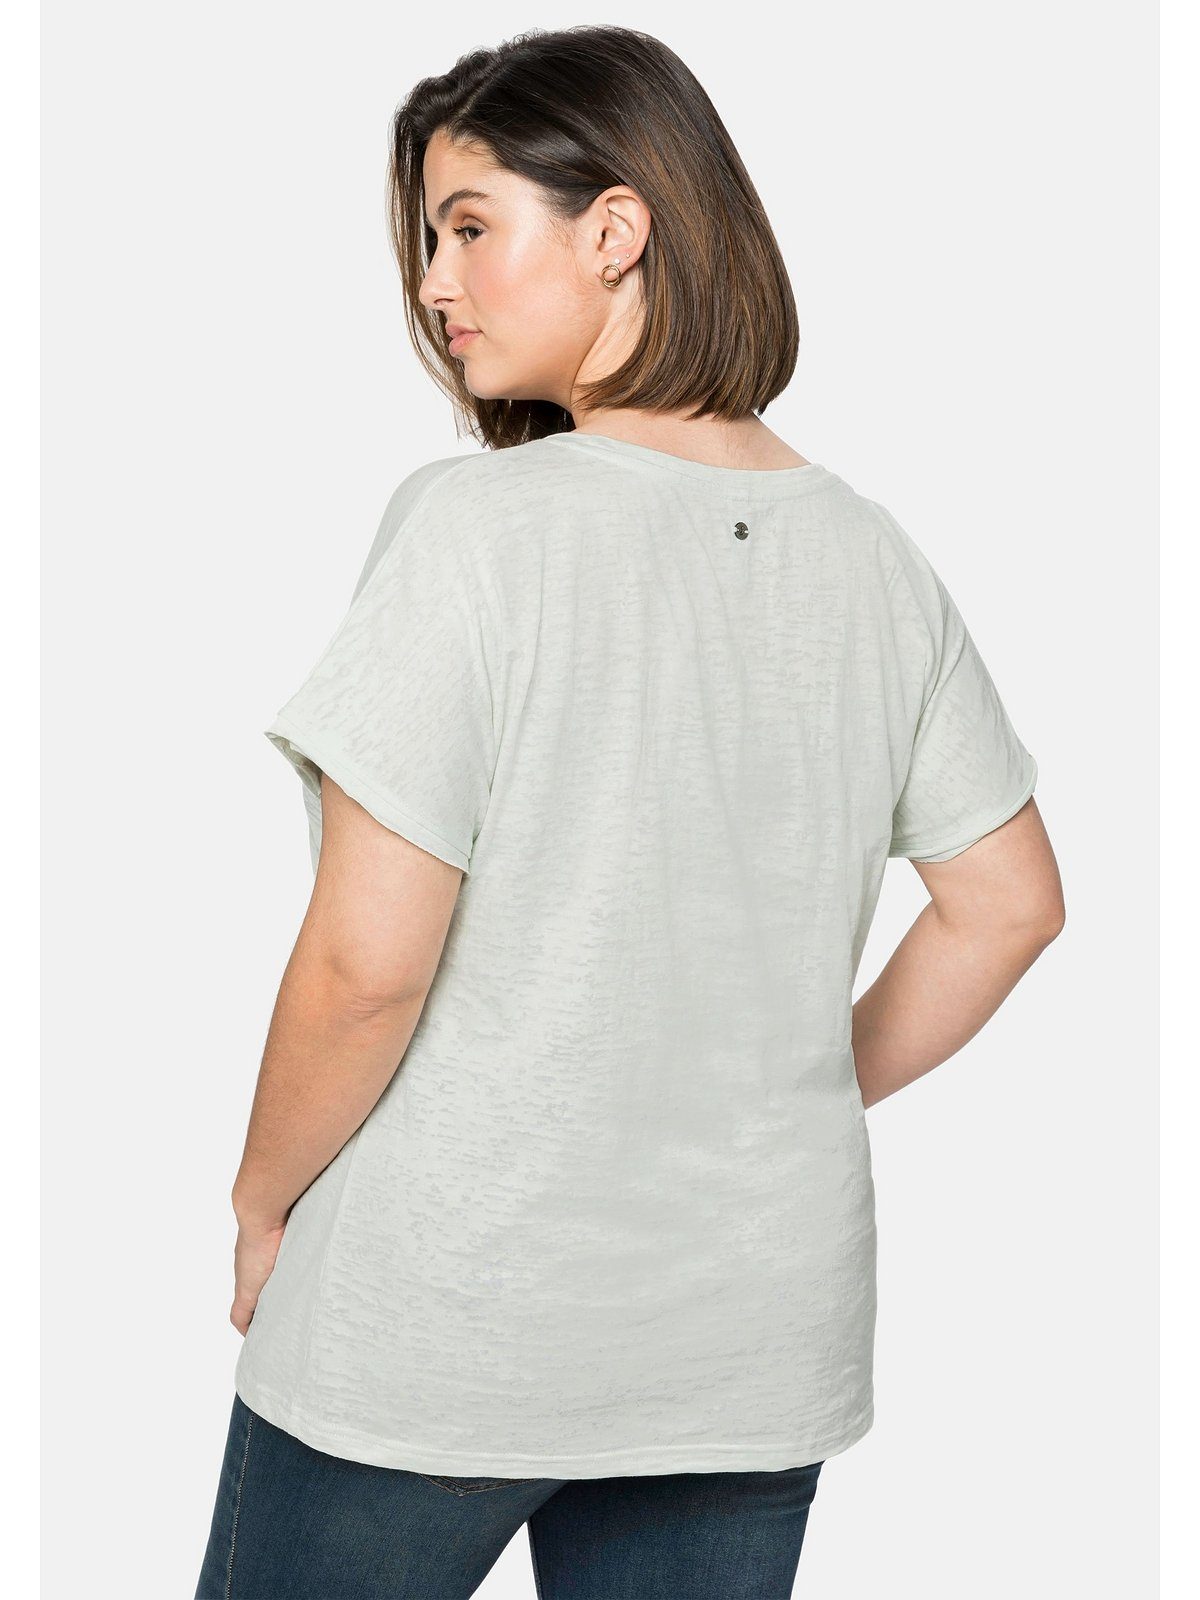 blassaqua mit Große Ausbrennermuster, T-Shirt leicht Sheego transparent Größen